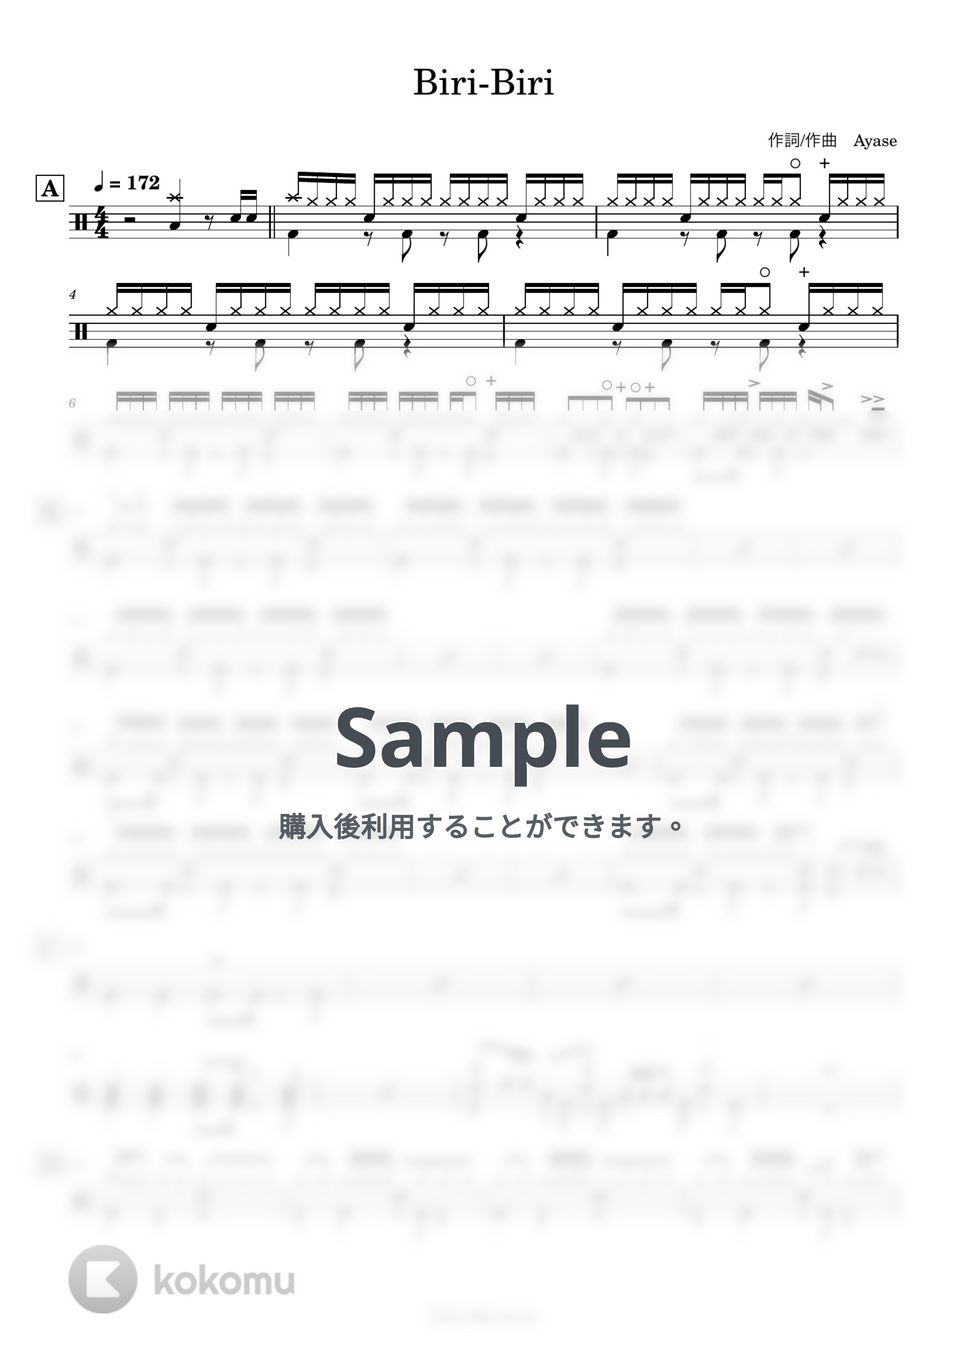 YOASOBI - 【ドラム譜】Biri-Biri (参考動画あり) by Taiki Mizumoto